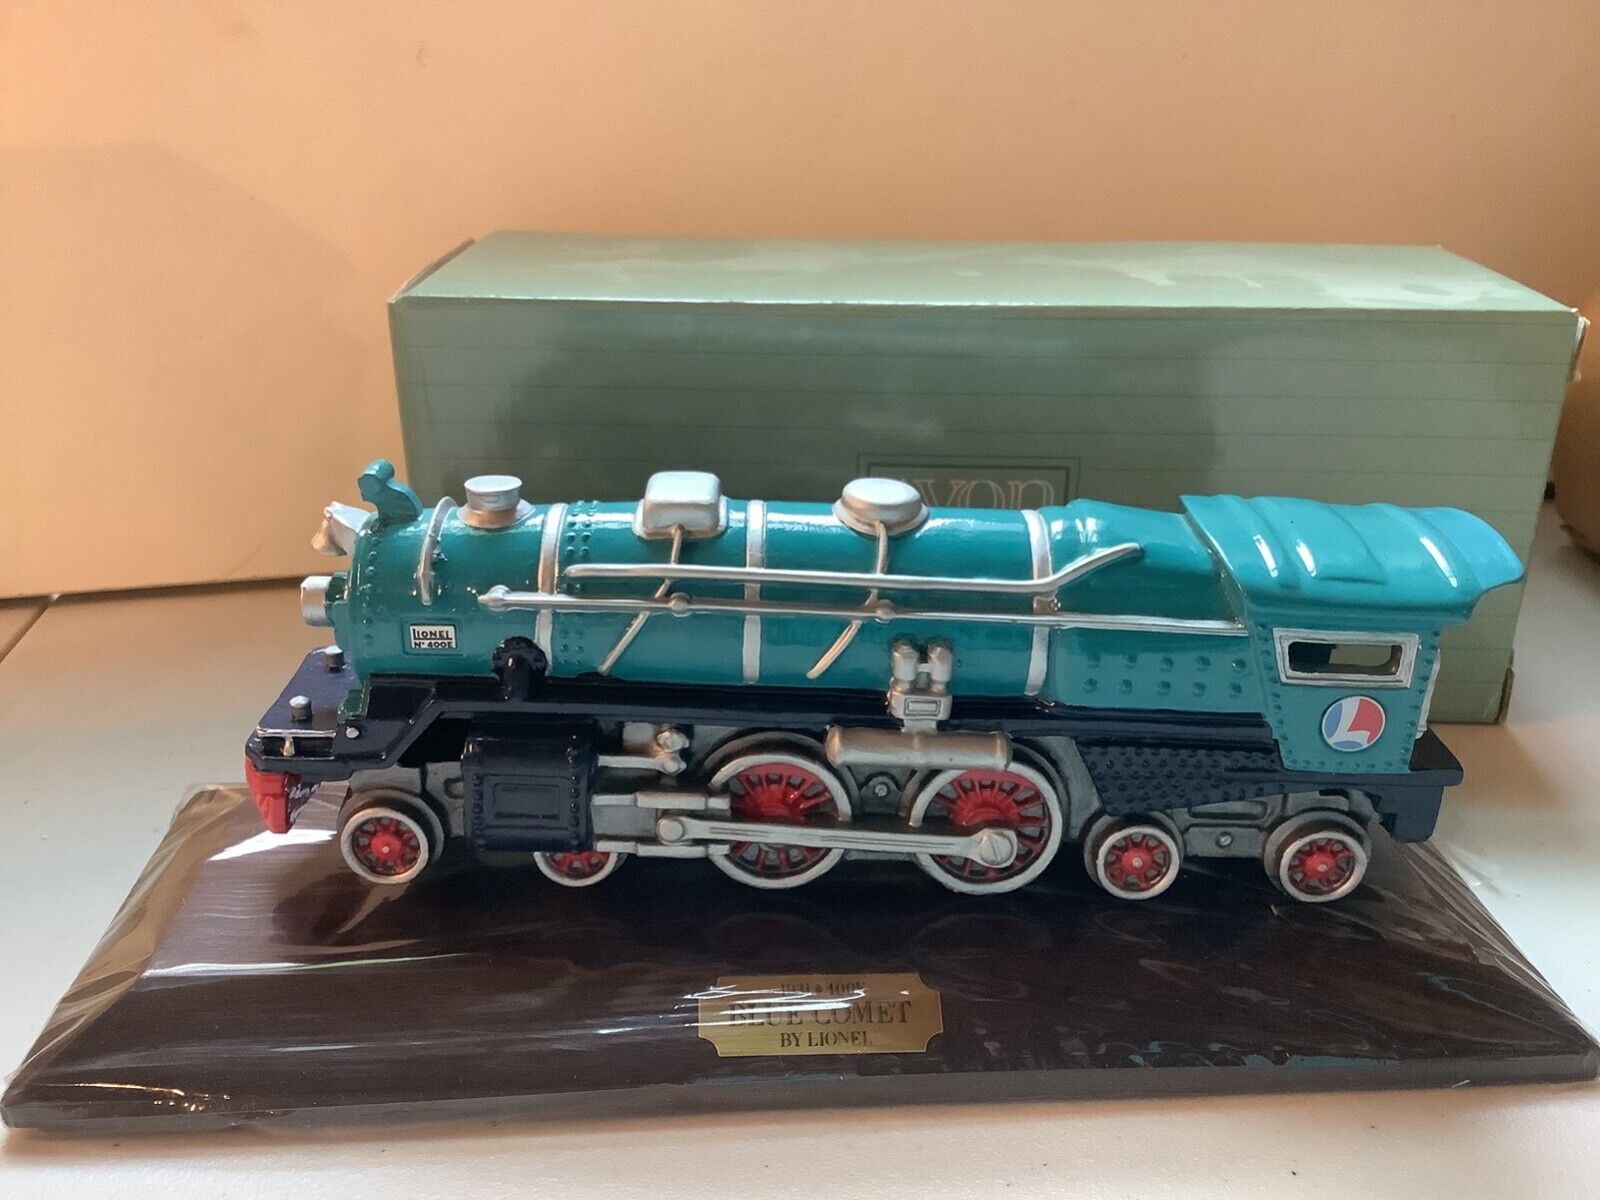 1991 Avon The Lionel No 400 E Classic Train Collection Blue Comet Locomotive